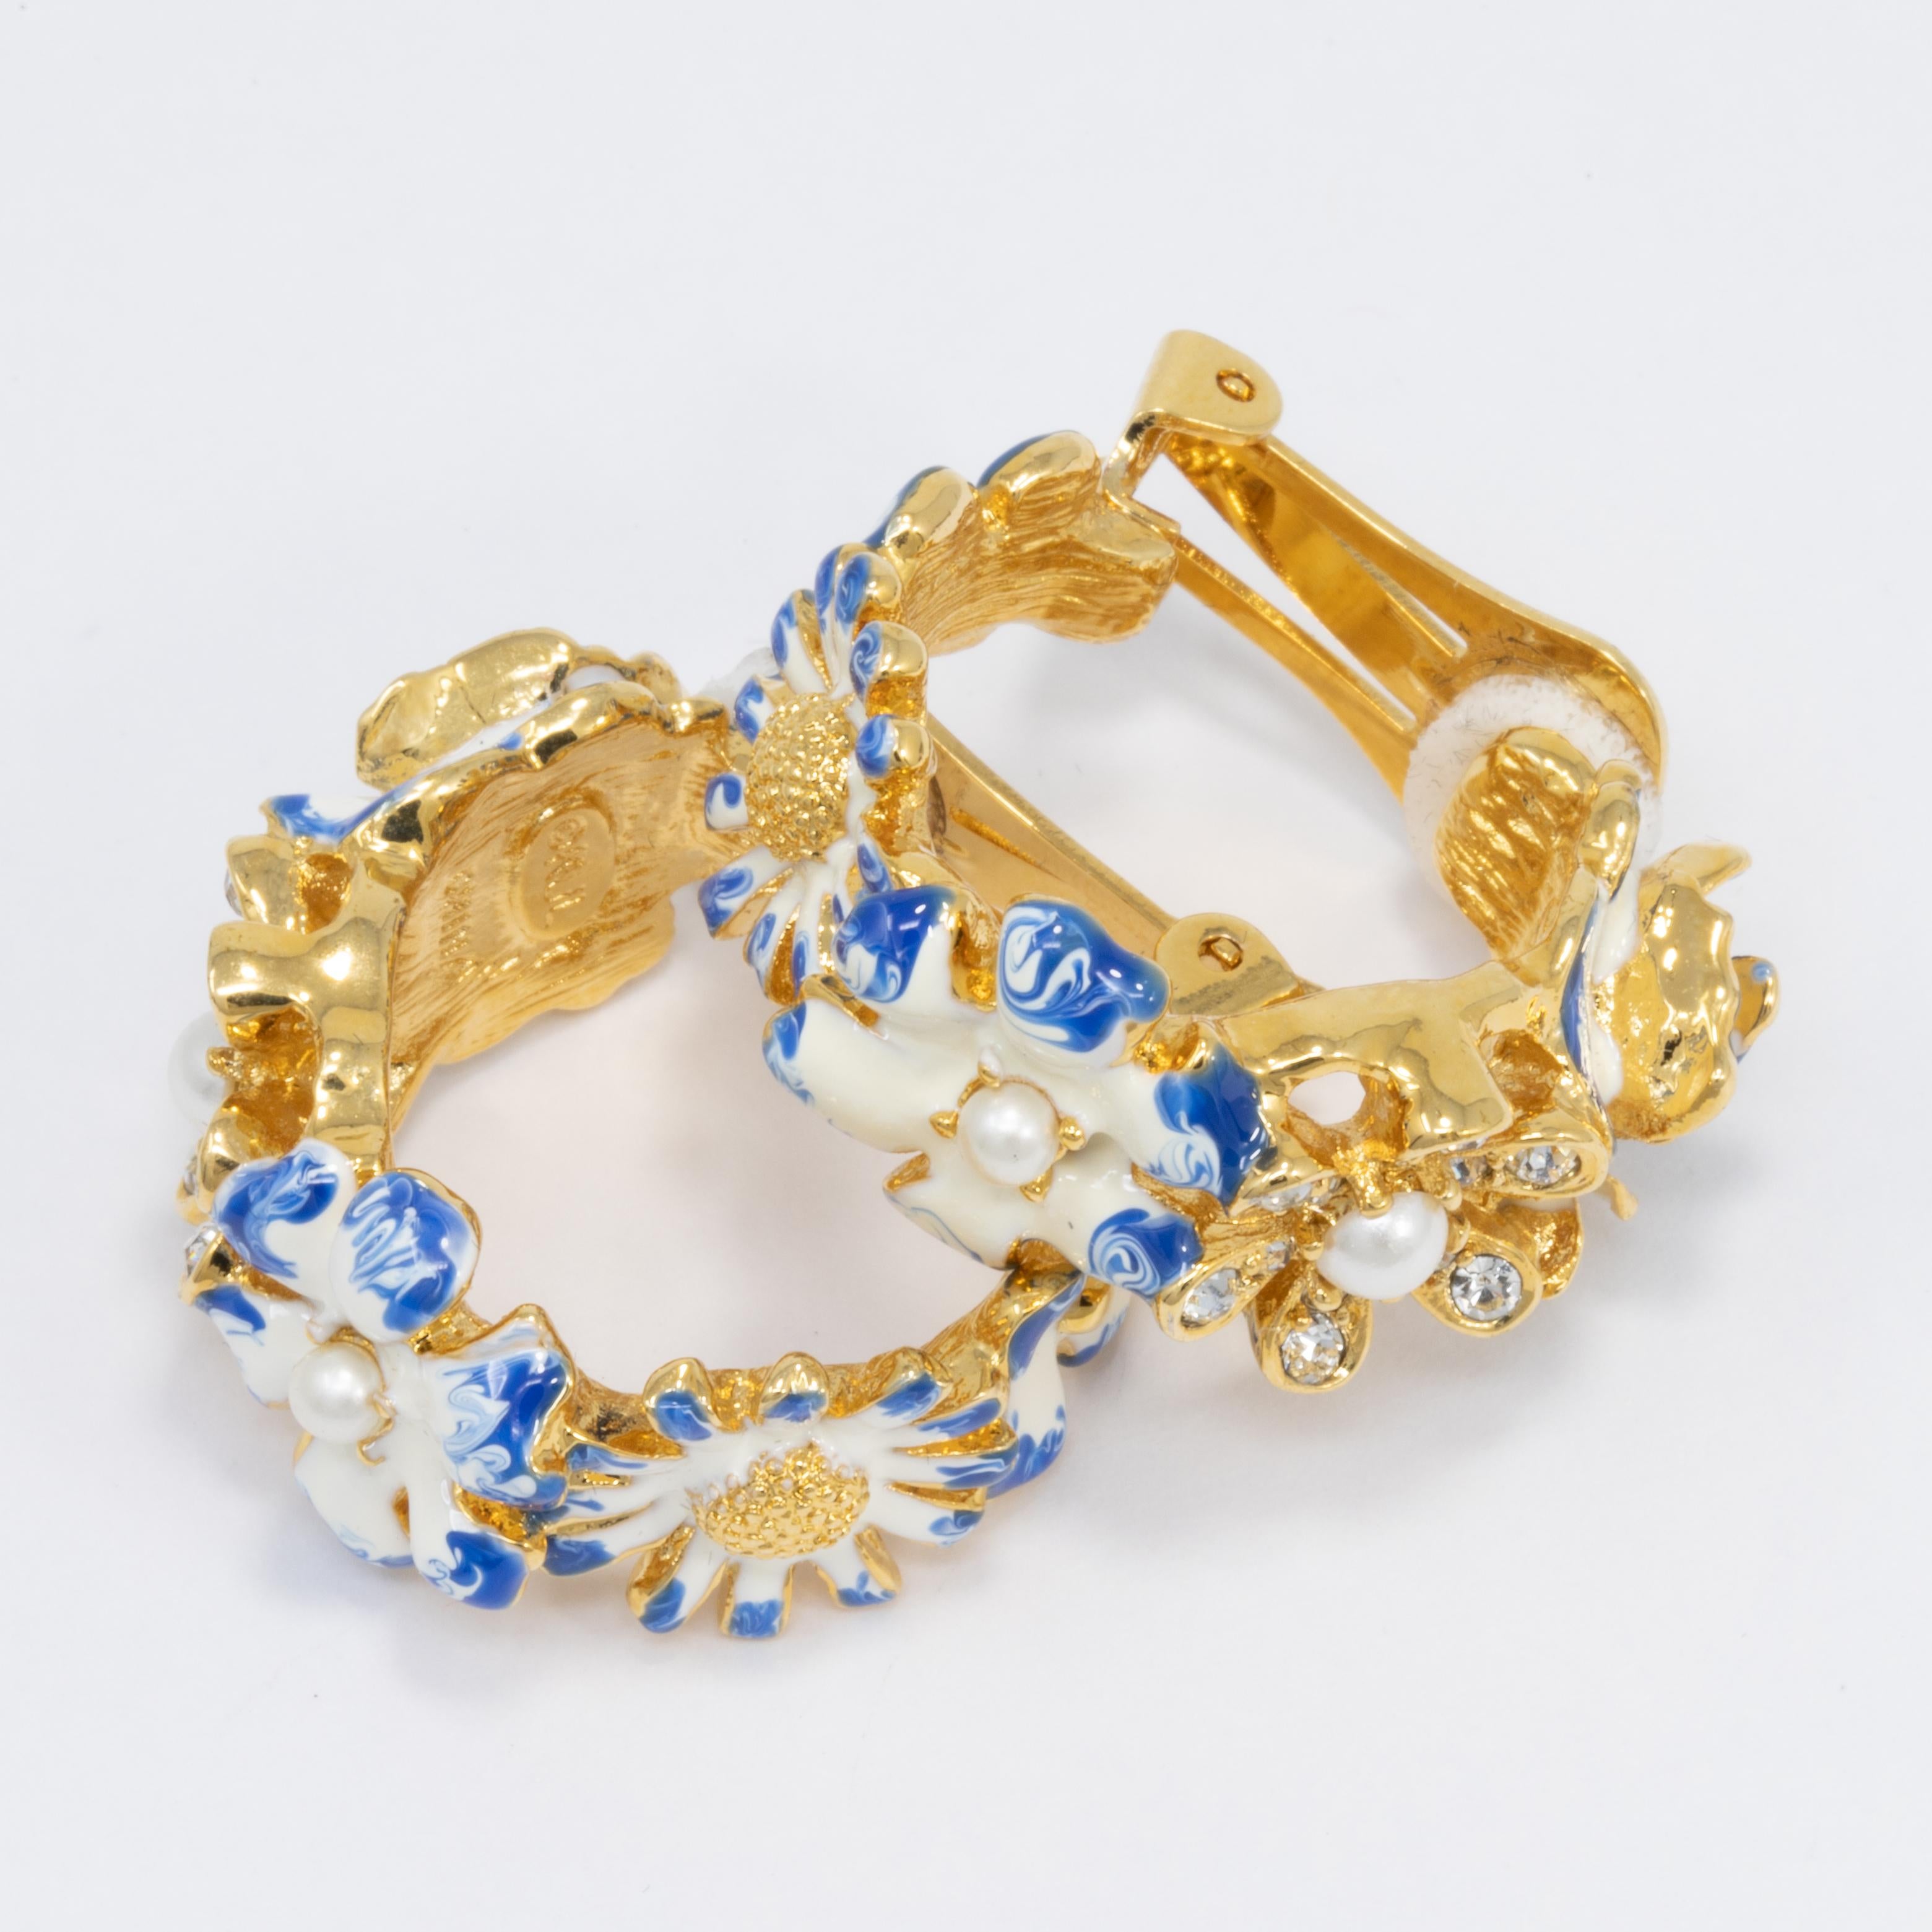 Une paire de boucles d'oreilles en forme de fleur dorée, peinte en émail blanc et bleu et rehaussée de fausses perles et de cristaux. Par Kenneth Jay Lane.

Poinçons : KJL

Plaqué or.